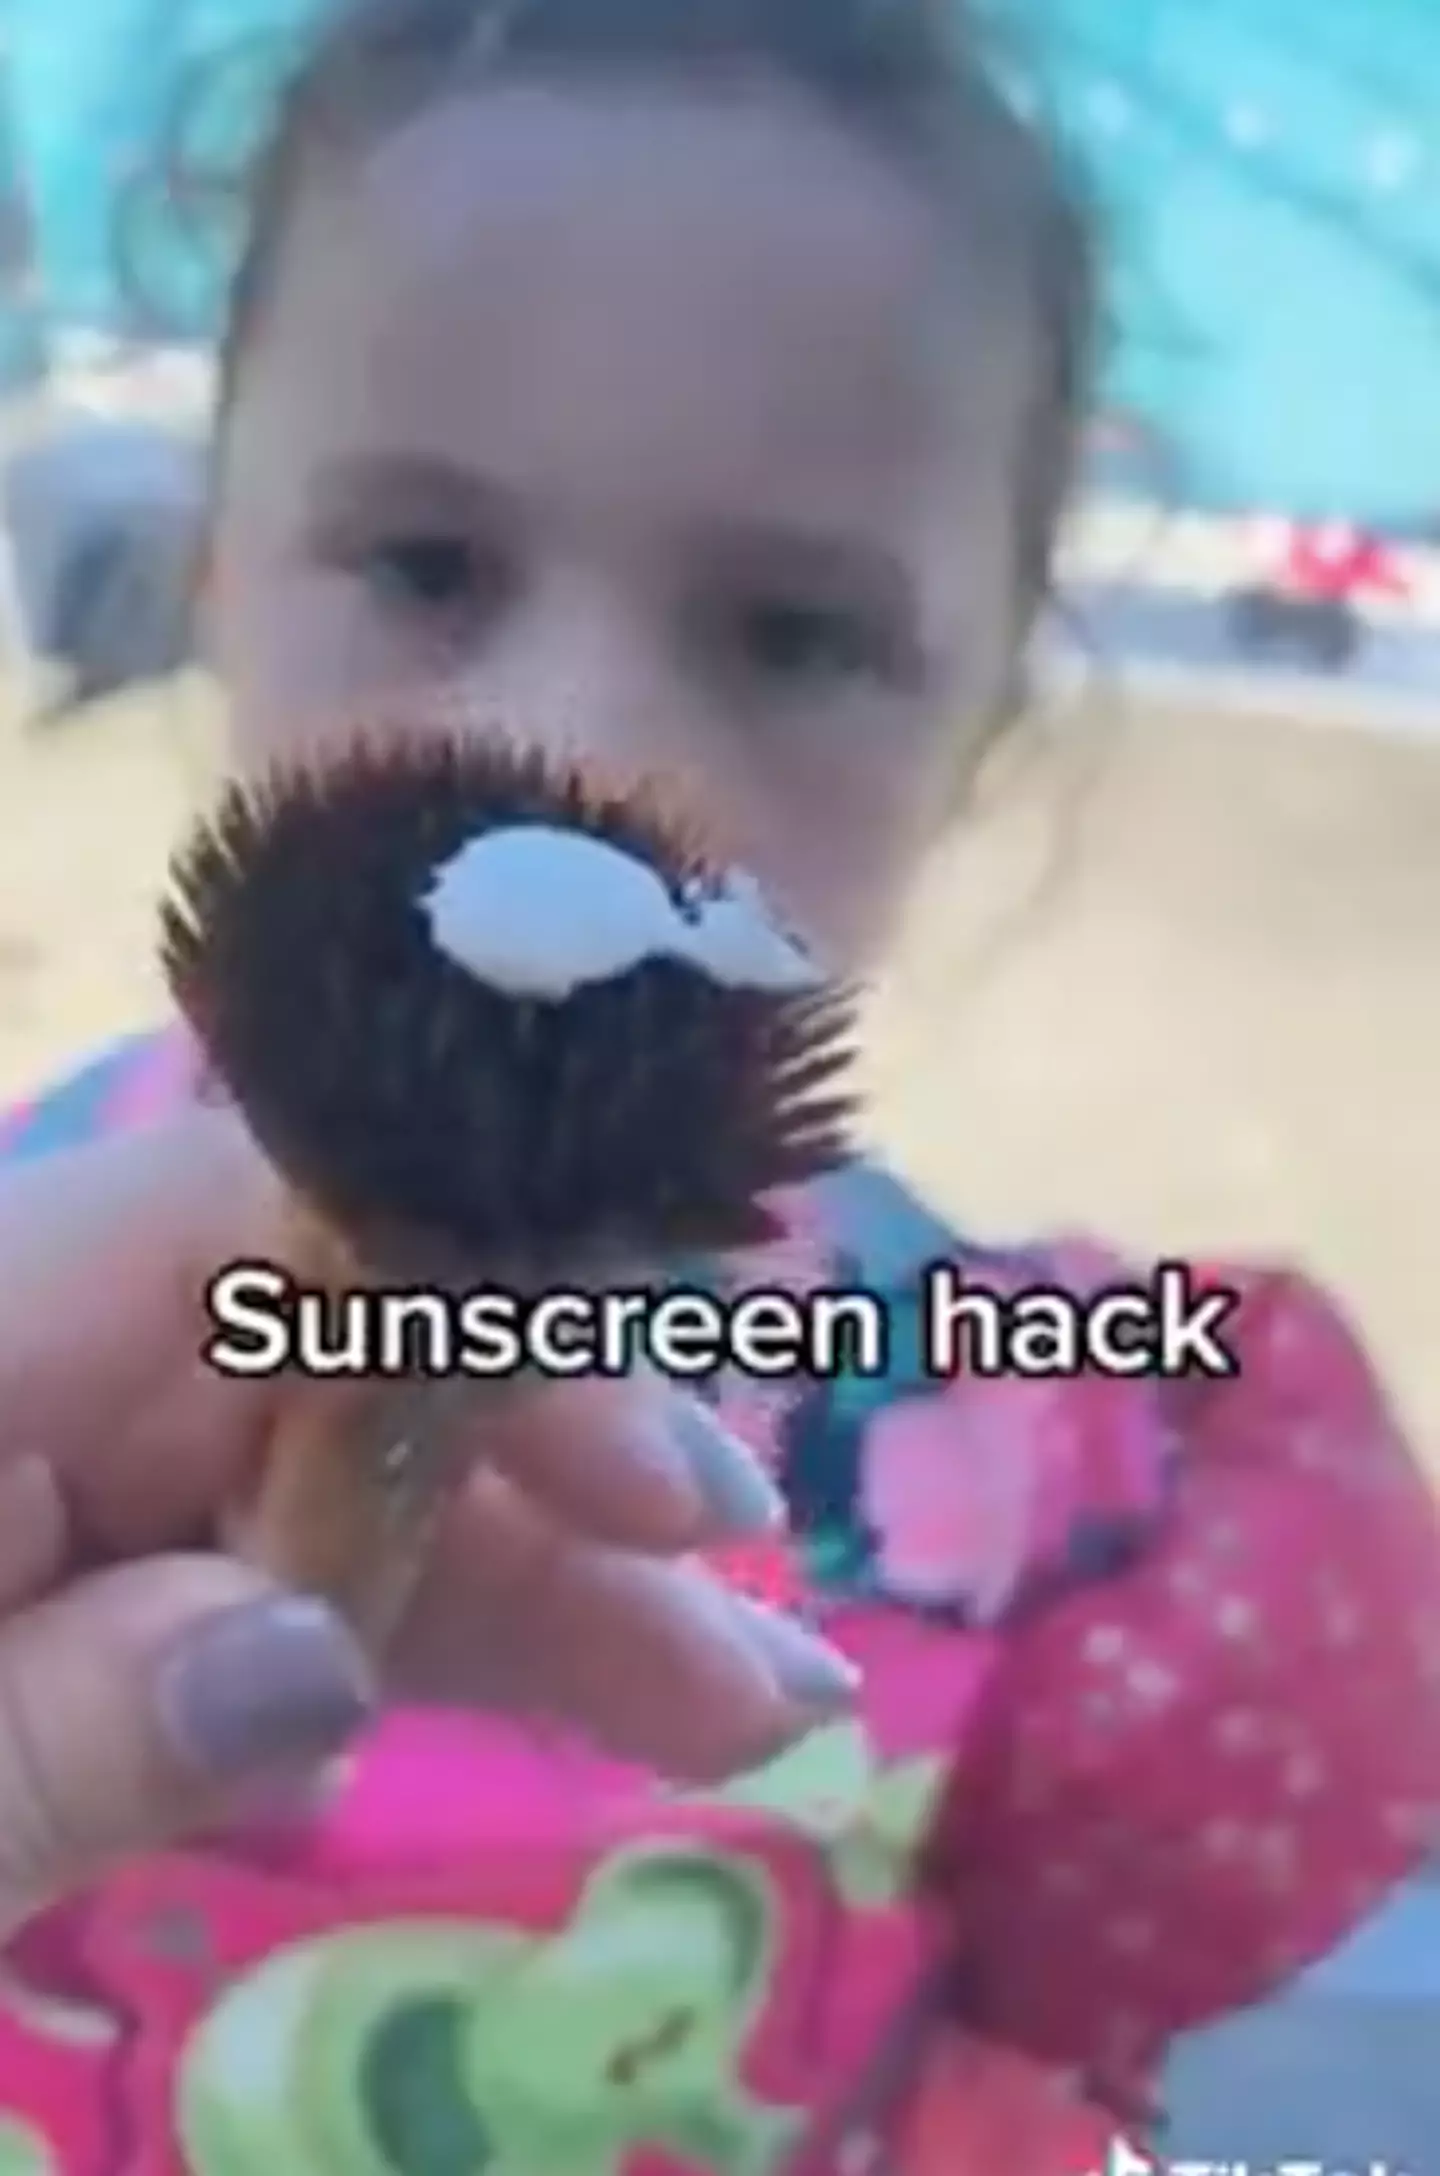 The mum shared the suncream hack on social media (